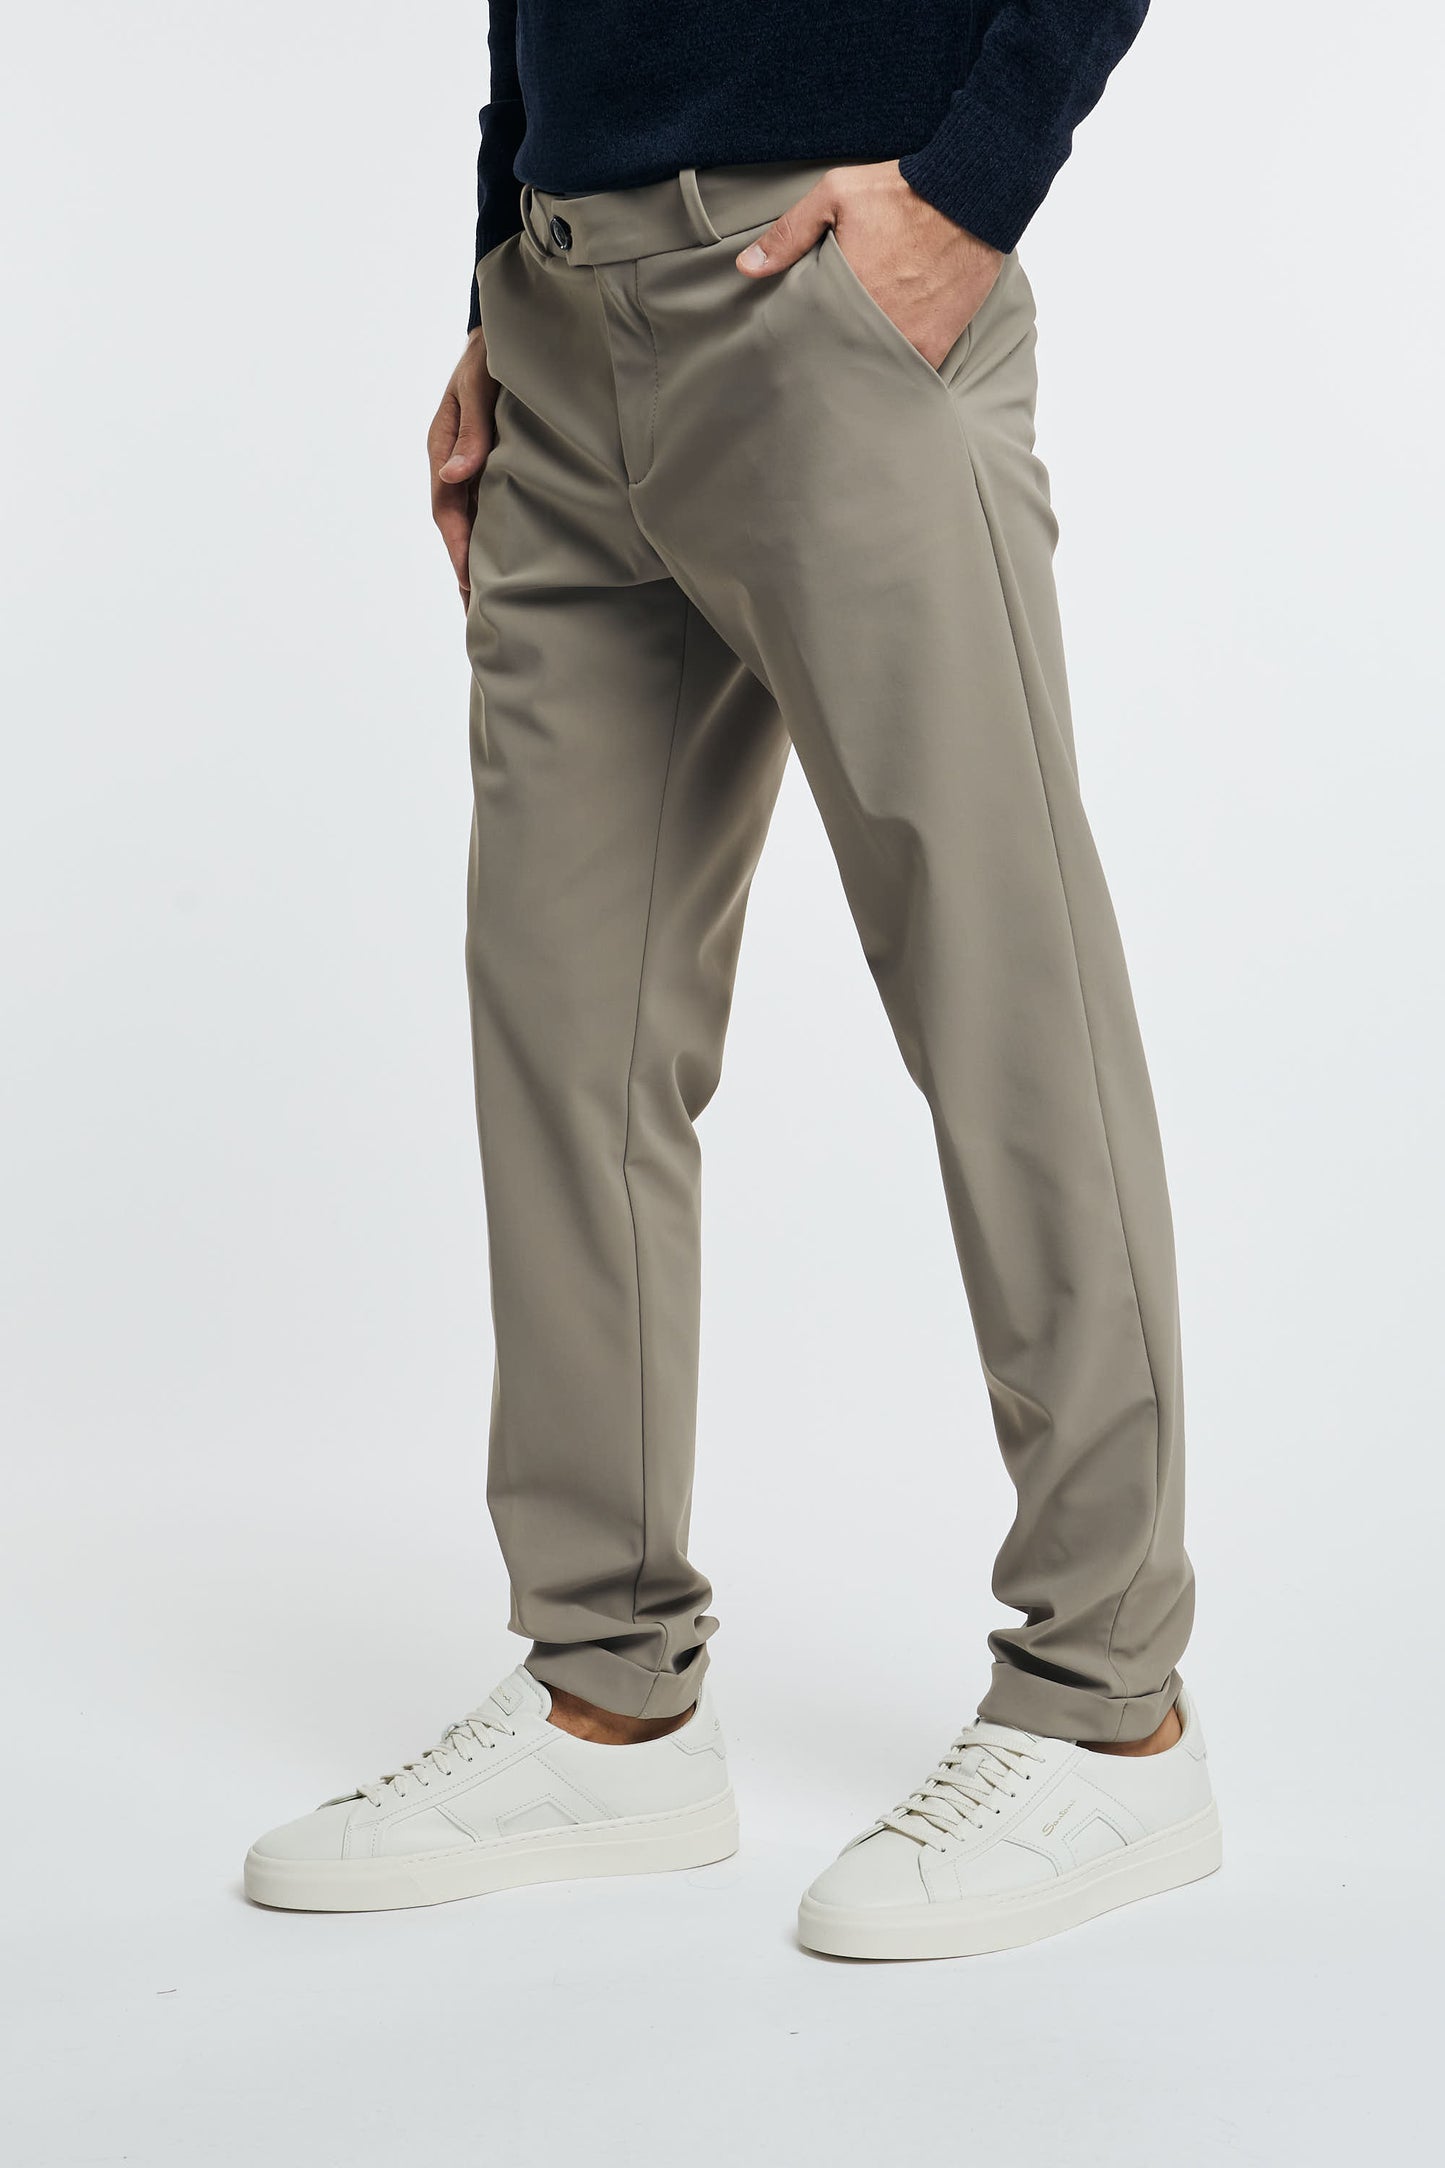 RRD Pantalone Chino in Poliammide/Elastan Grigio con Dettagli Tortora - 3